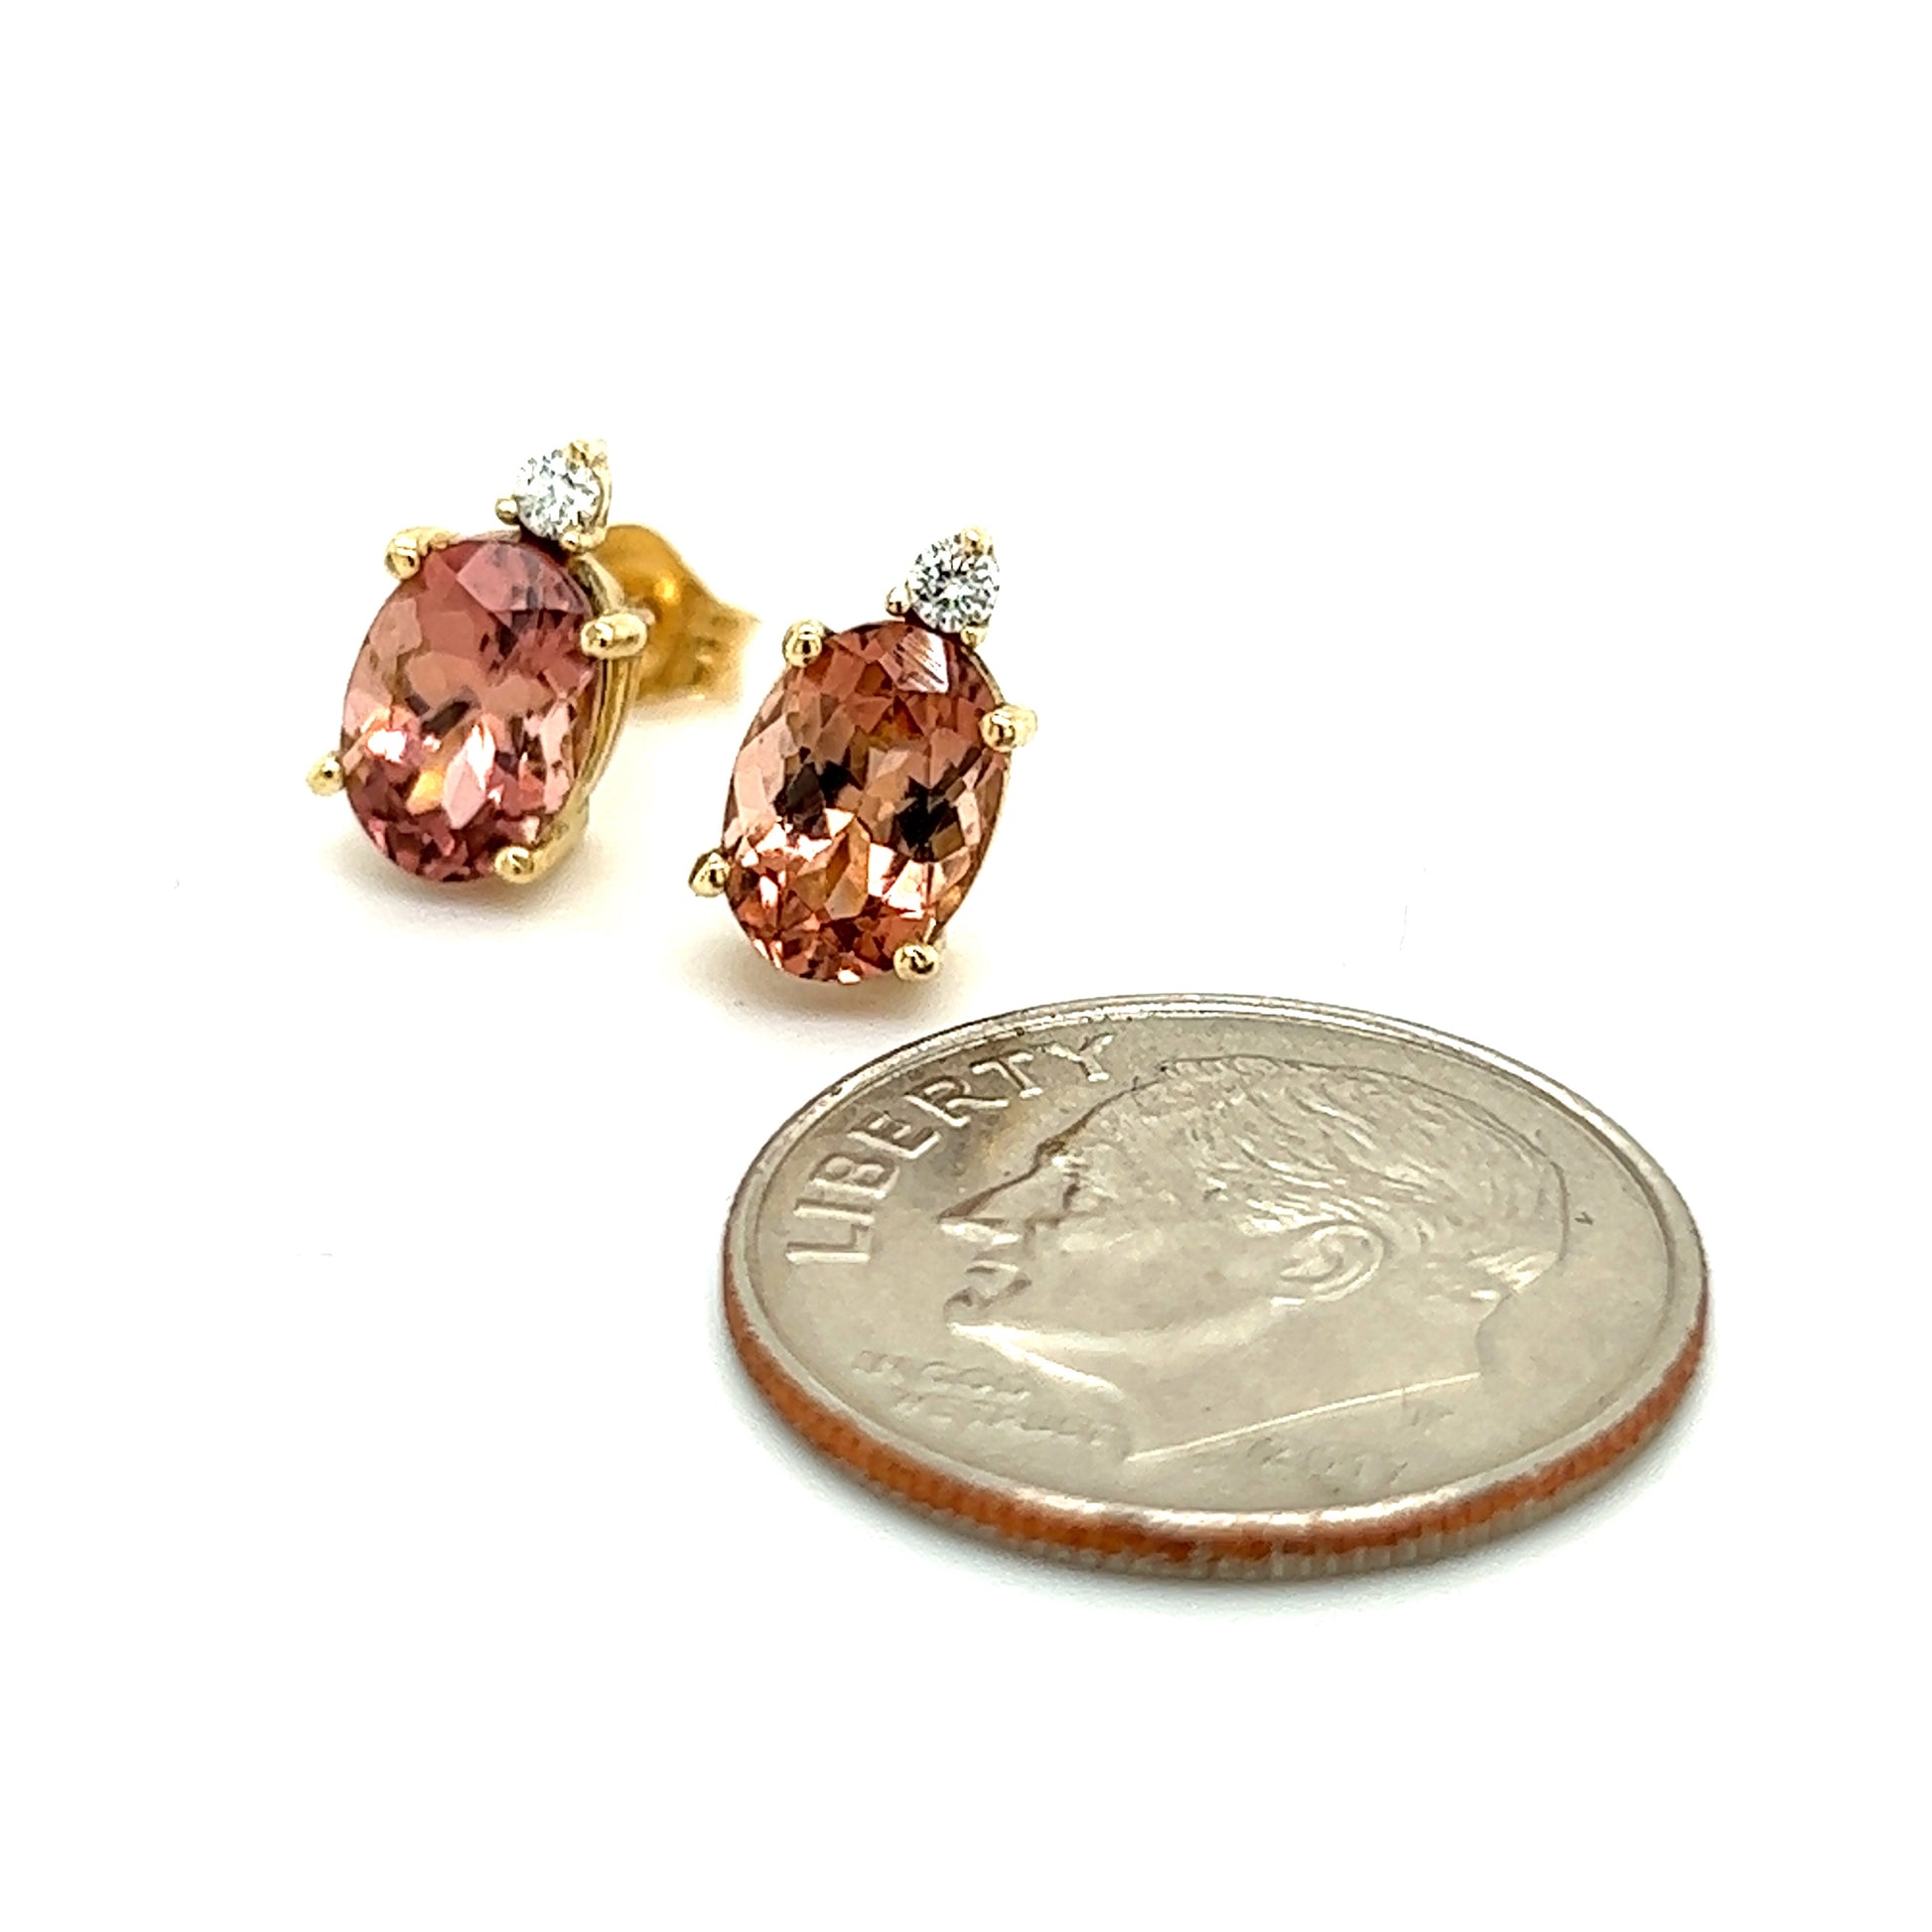 Natural Tourmaline Diamond Stud Earrings 14k Y Gold 1.76 TCW Certified $1,690 121431 - Certified Fine Jewelry